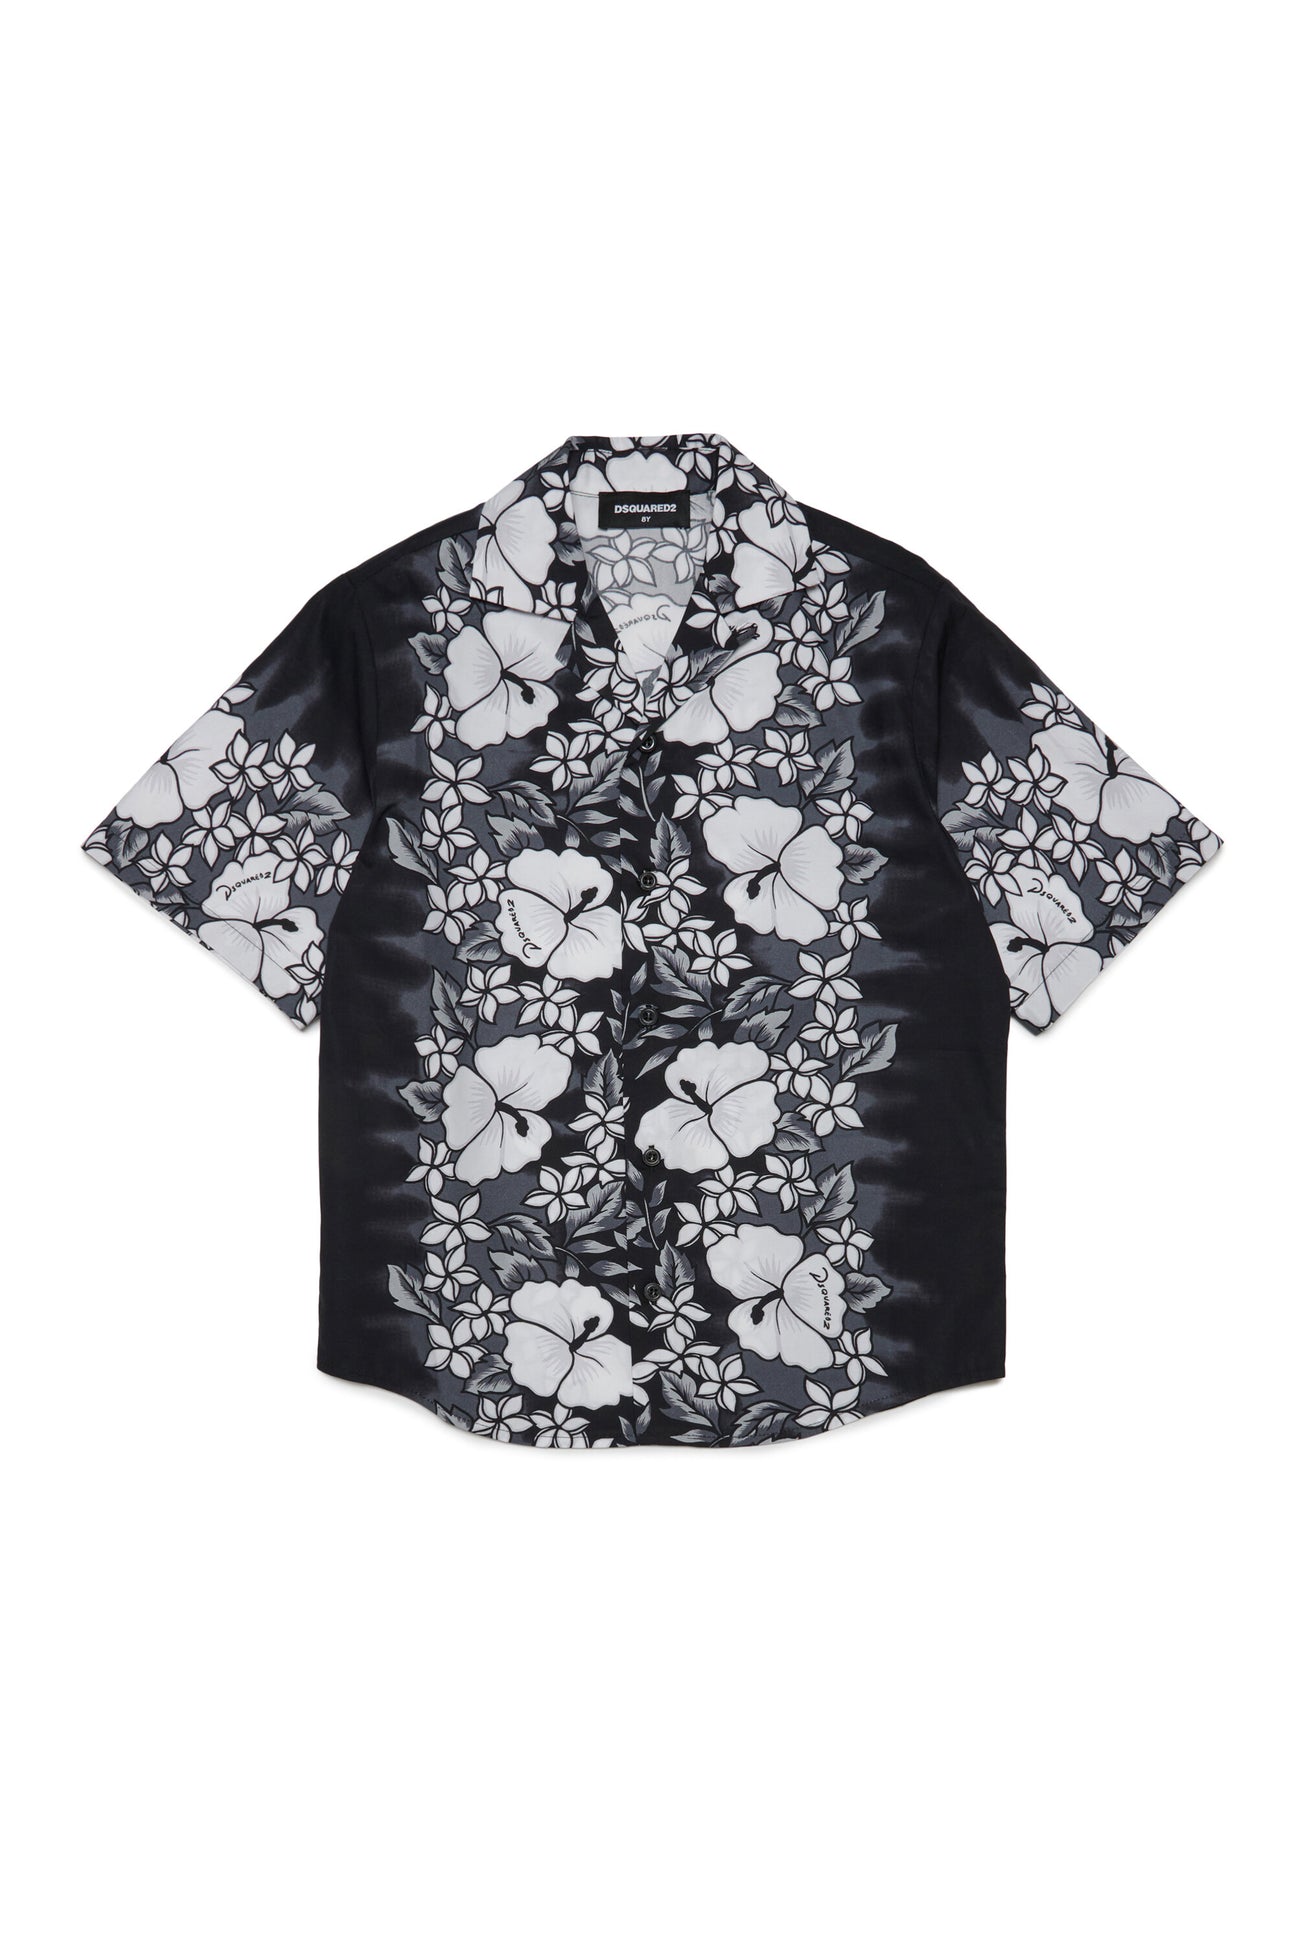 Hawaiian shirt with floral print Hawaiian shirt with floral print